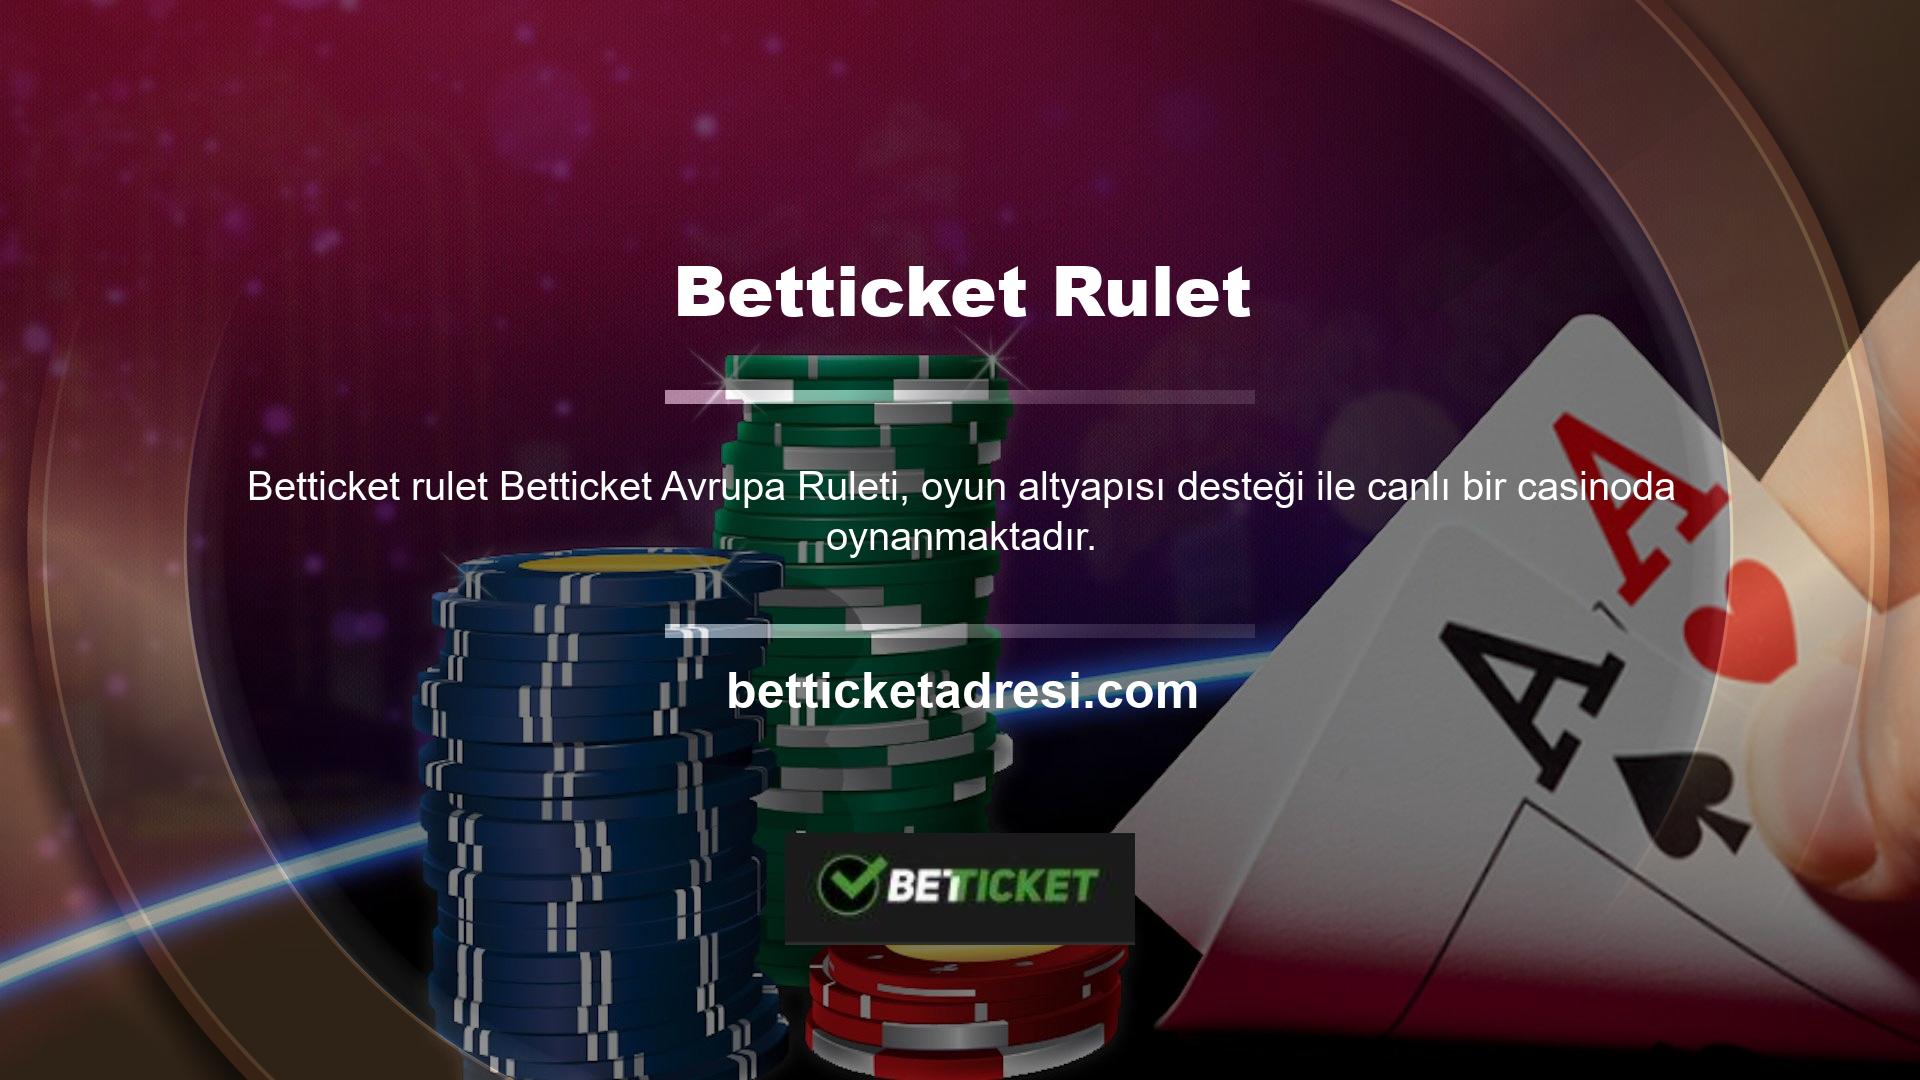 Rulet, bir casinoda oynaması kolay ve eğlenceli bir oyundur